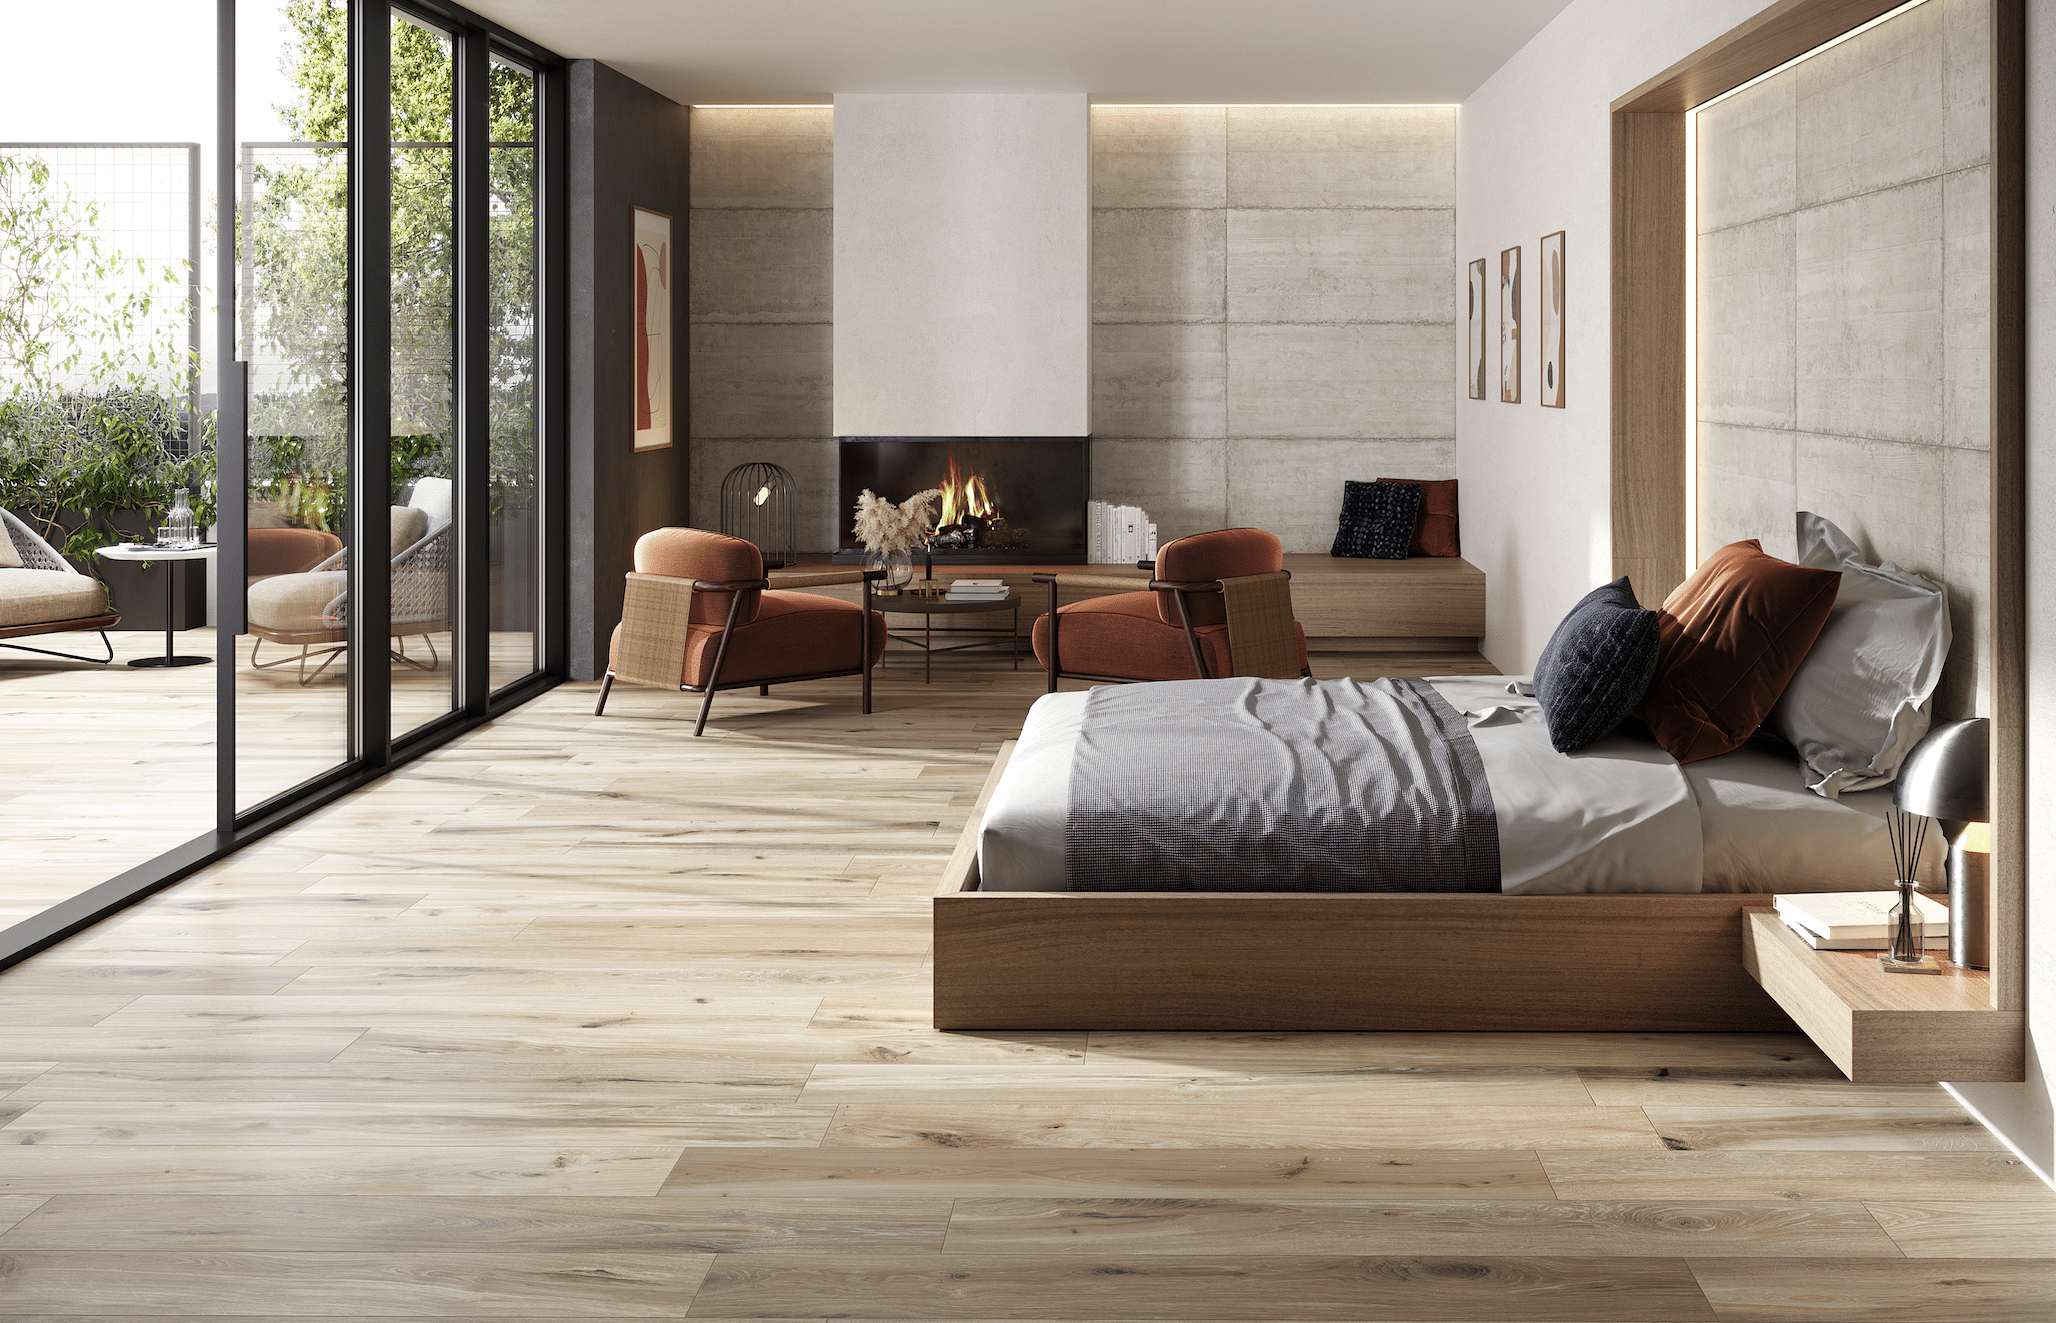 Fliesendorf zeigt ein großzügiges Schlafzimmer mit Fliesendielen in Holzoptik, ein modernes Doppelbett, einen gemauerten Kamin sowie eine bodenbündige Ganzglas-Lösung.